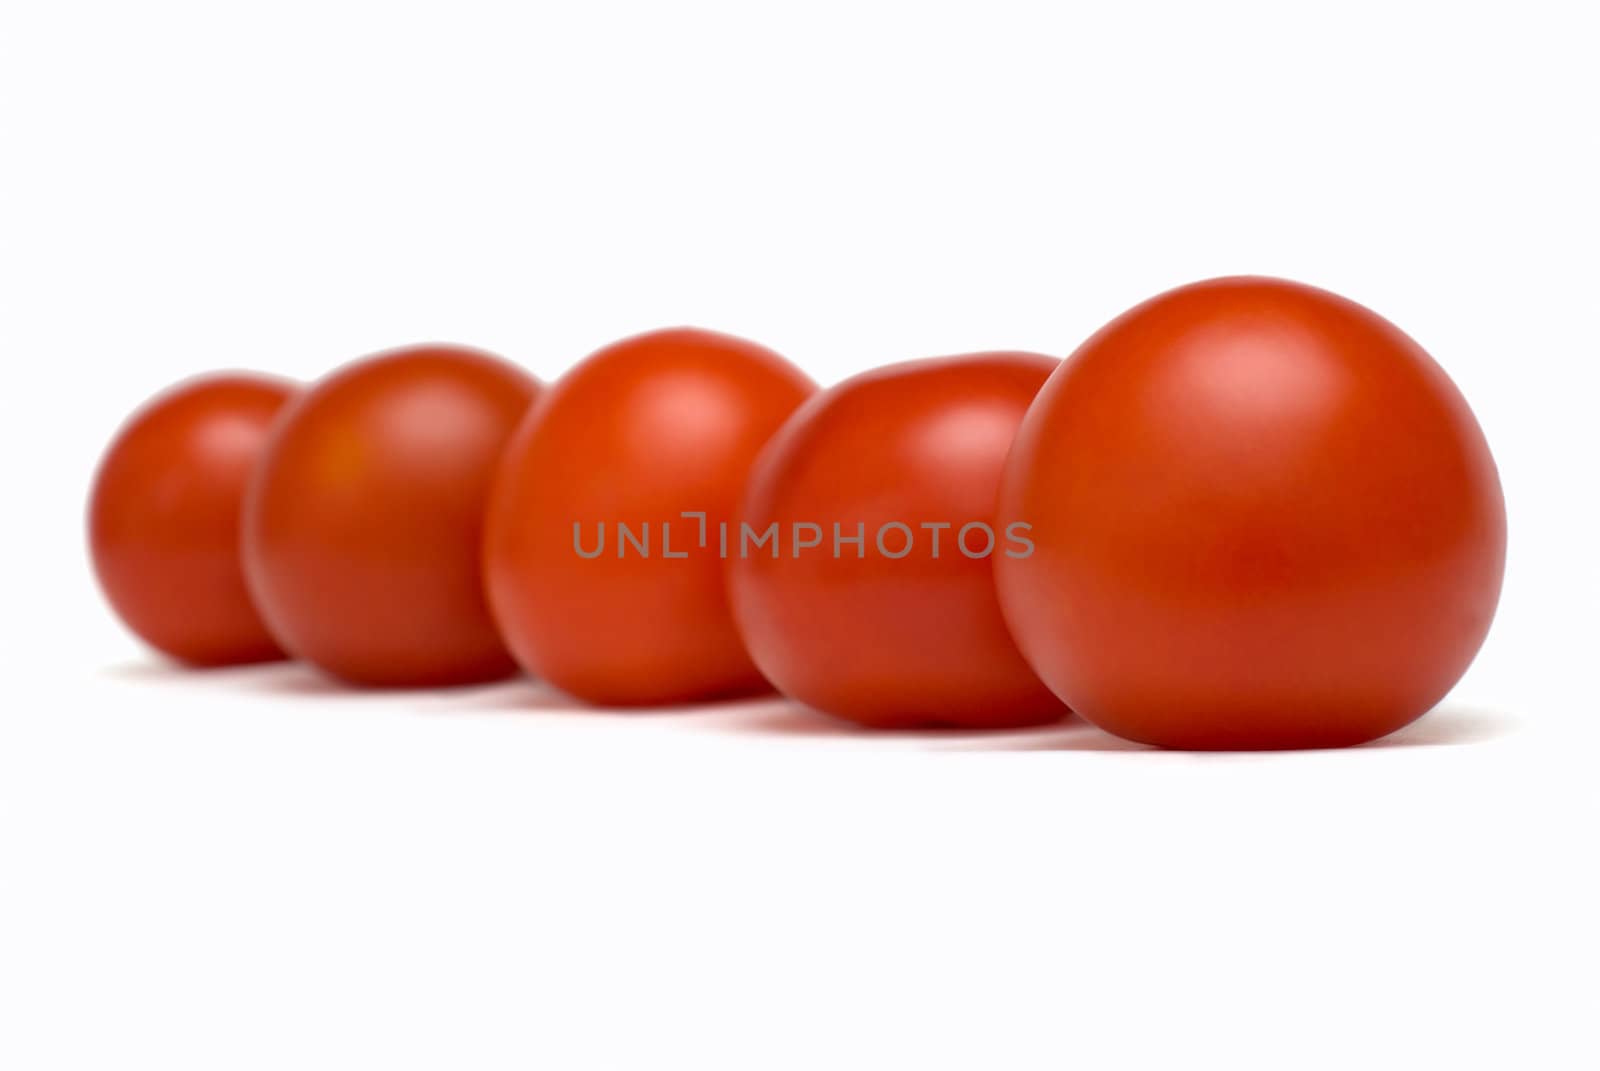 Rank of tomatoes by kzen